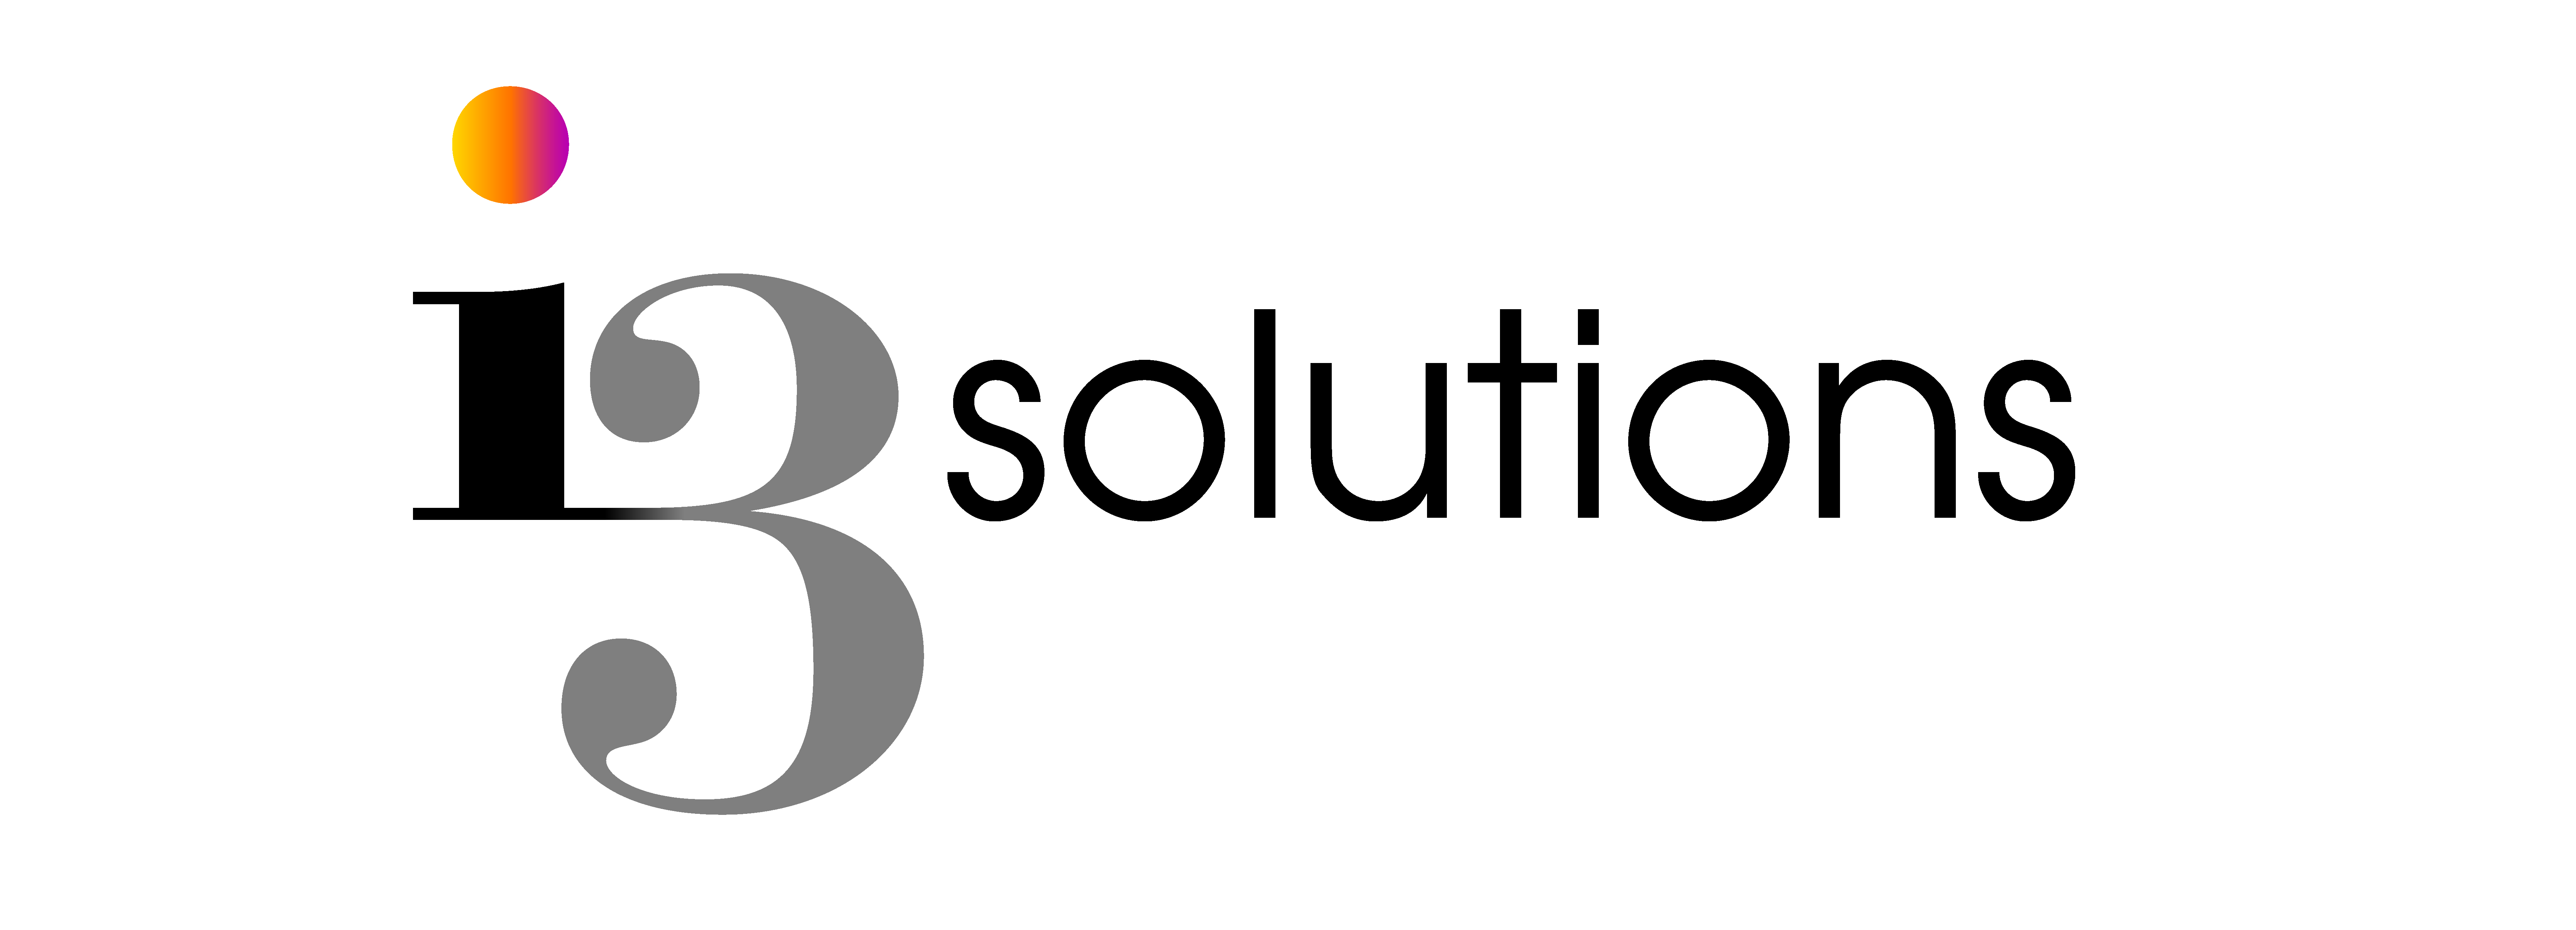 i3-Solutions-Full-Logo-(EPS).jpg